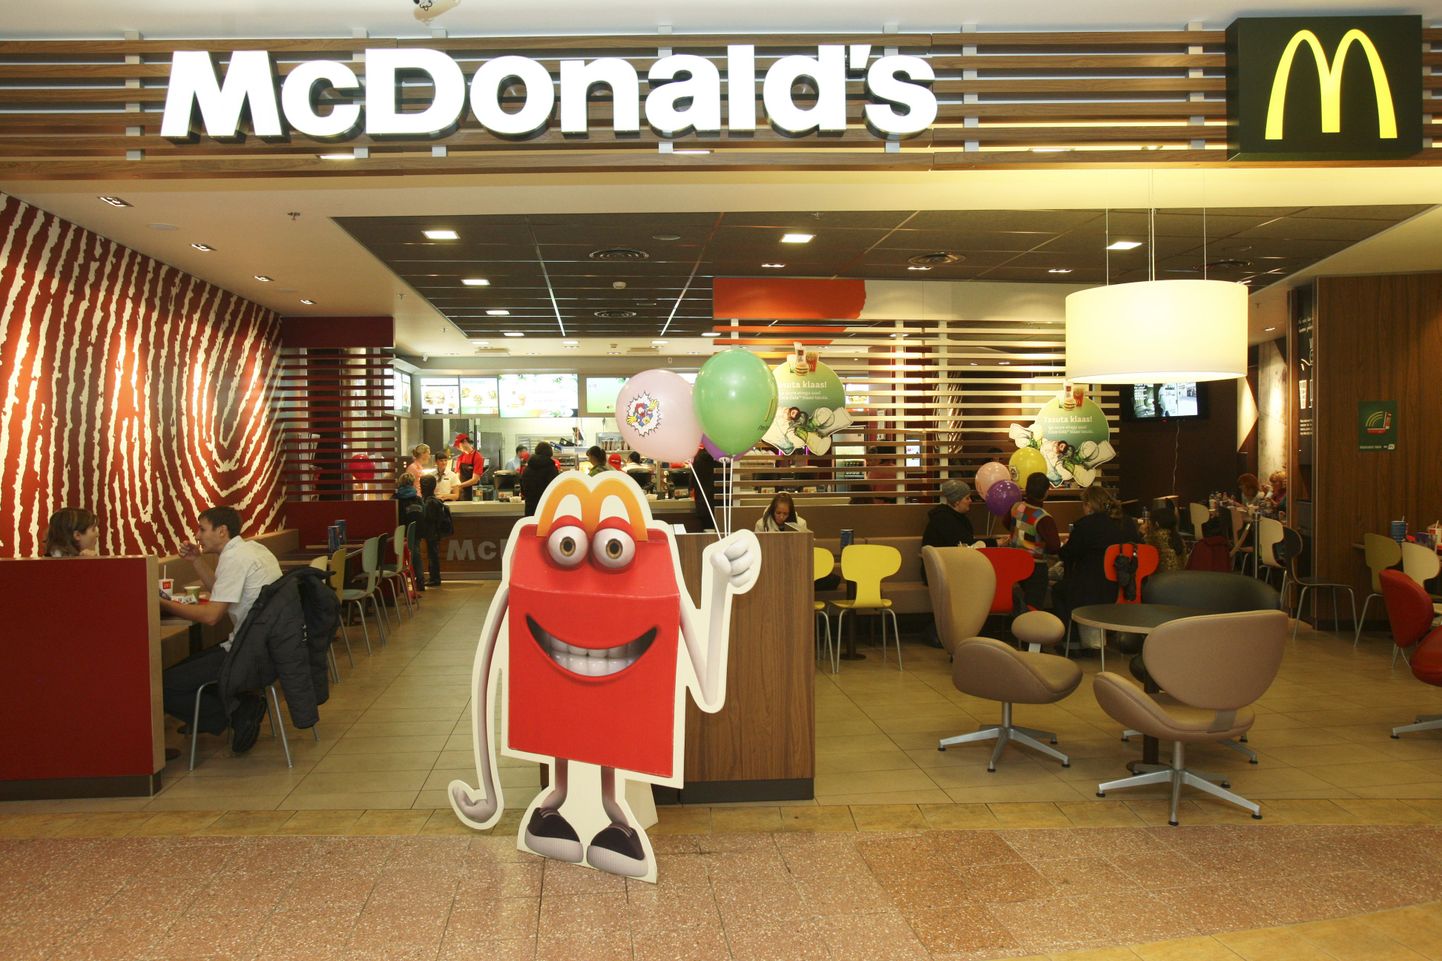 Eesti McDonald’s restoranides salamenüüd ei eksisteeri.